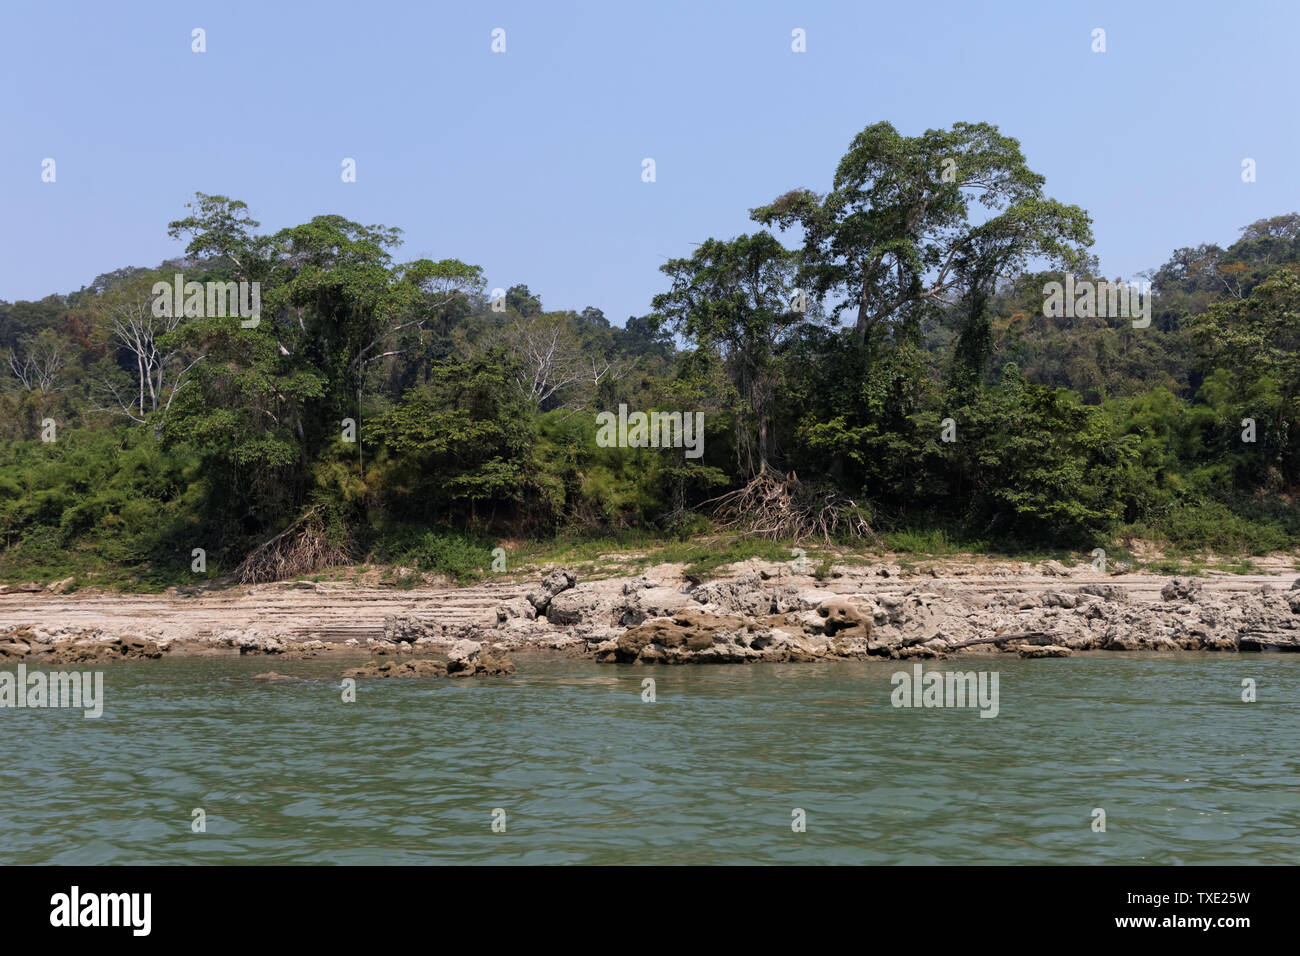 River Usumacinta at the border of Mexico and Guatemala Stock Photo